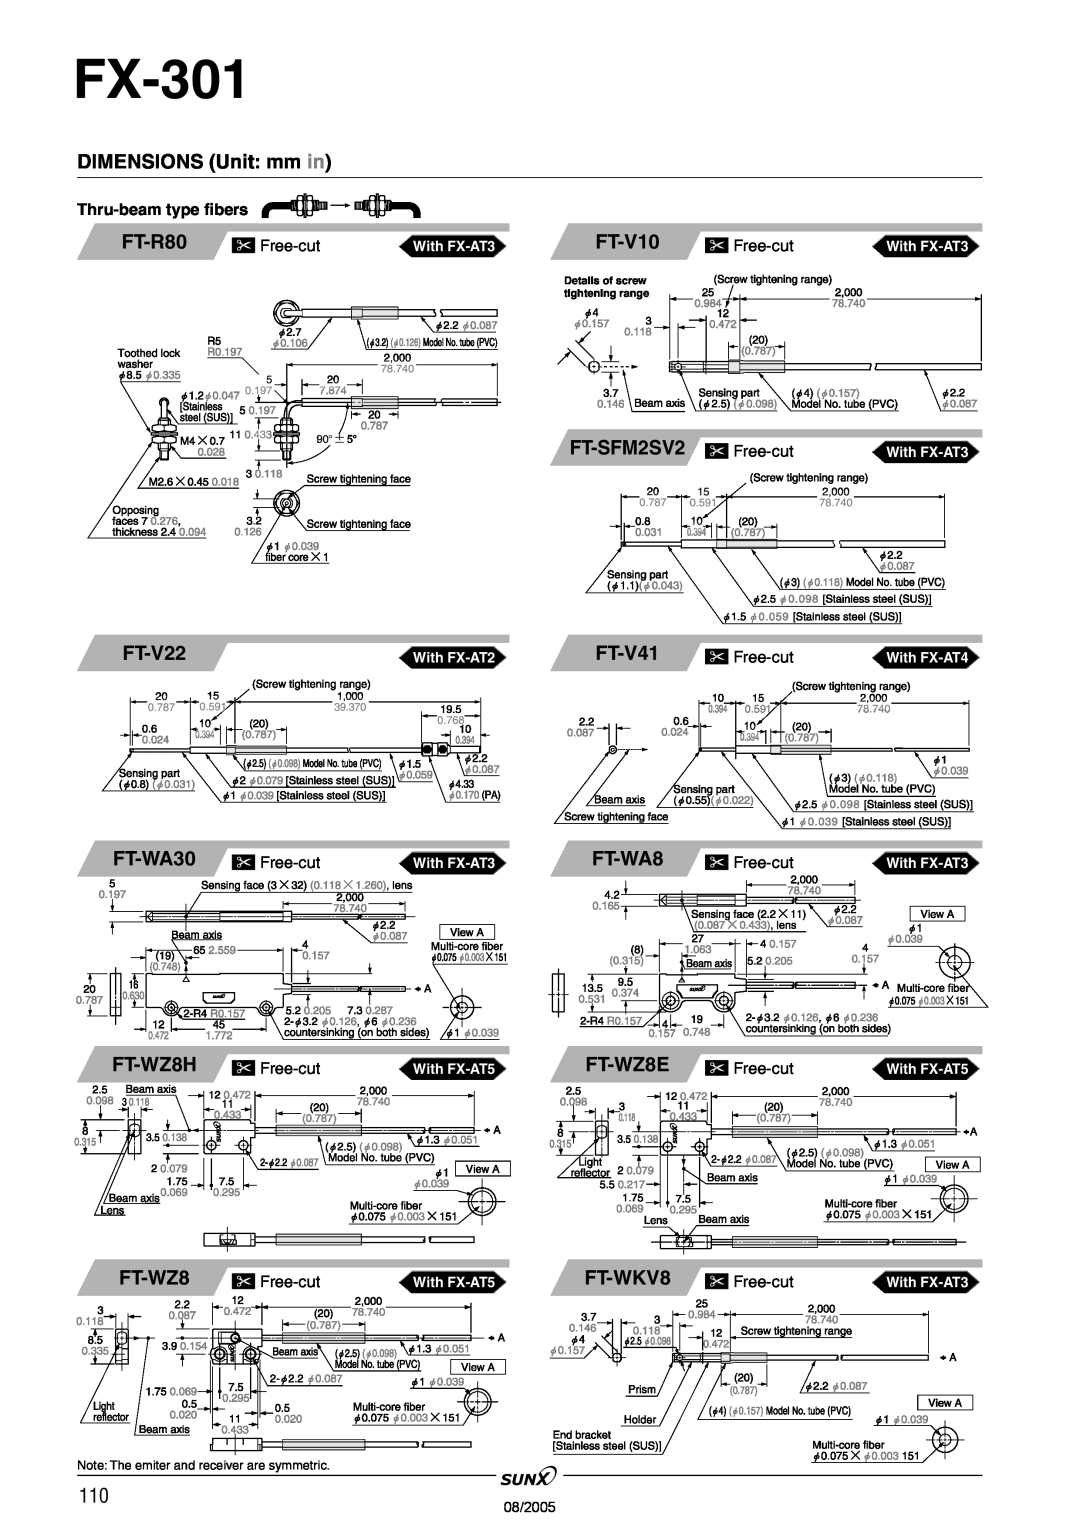 Panasonic FX-301 manual FT-R80, FT-V10, FT-SFM2SV2, FT-V22, FT-V41, FT-WA30, FT-WA8, FT-WZ8H, FT-WZ8E, FT-WKV8 